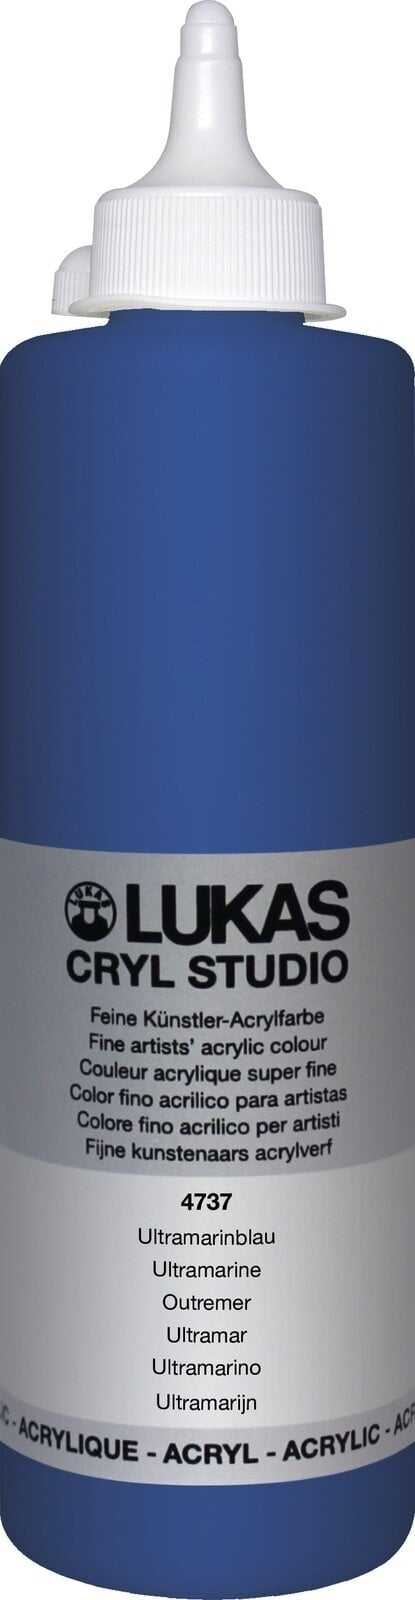 Акрилна боя Lukas Cryl Studio Acrylic Paint Plastic Bottle АКРИЛНА боя Ultramarine 500 ml 1 бр